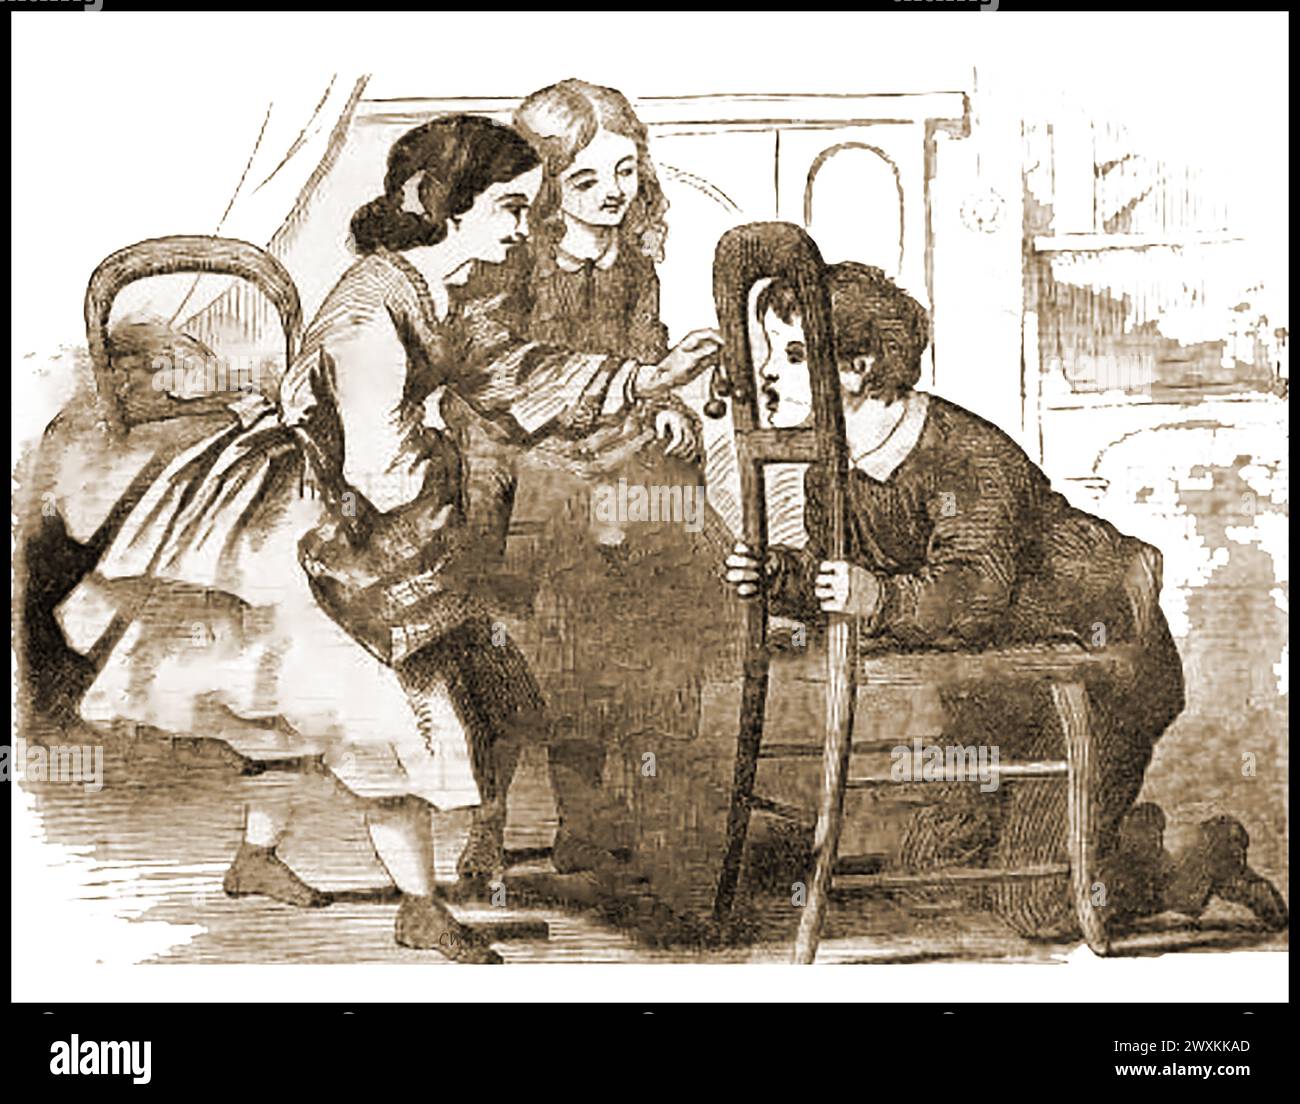 BOB CHERRY - Hausszene, viktorianisches Spiel. Kinder spielen den Zeitvertreib, bekannt als „Bob Cherry“, ein Spiel, bei dem eine Person versucht, mit dem Mund an einer schwingenden Kirsche zu schnappen. Das Spiel wurde bereits im 17. Jahrhundert von Erwachsenen gespielt Stockfoto